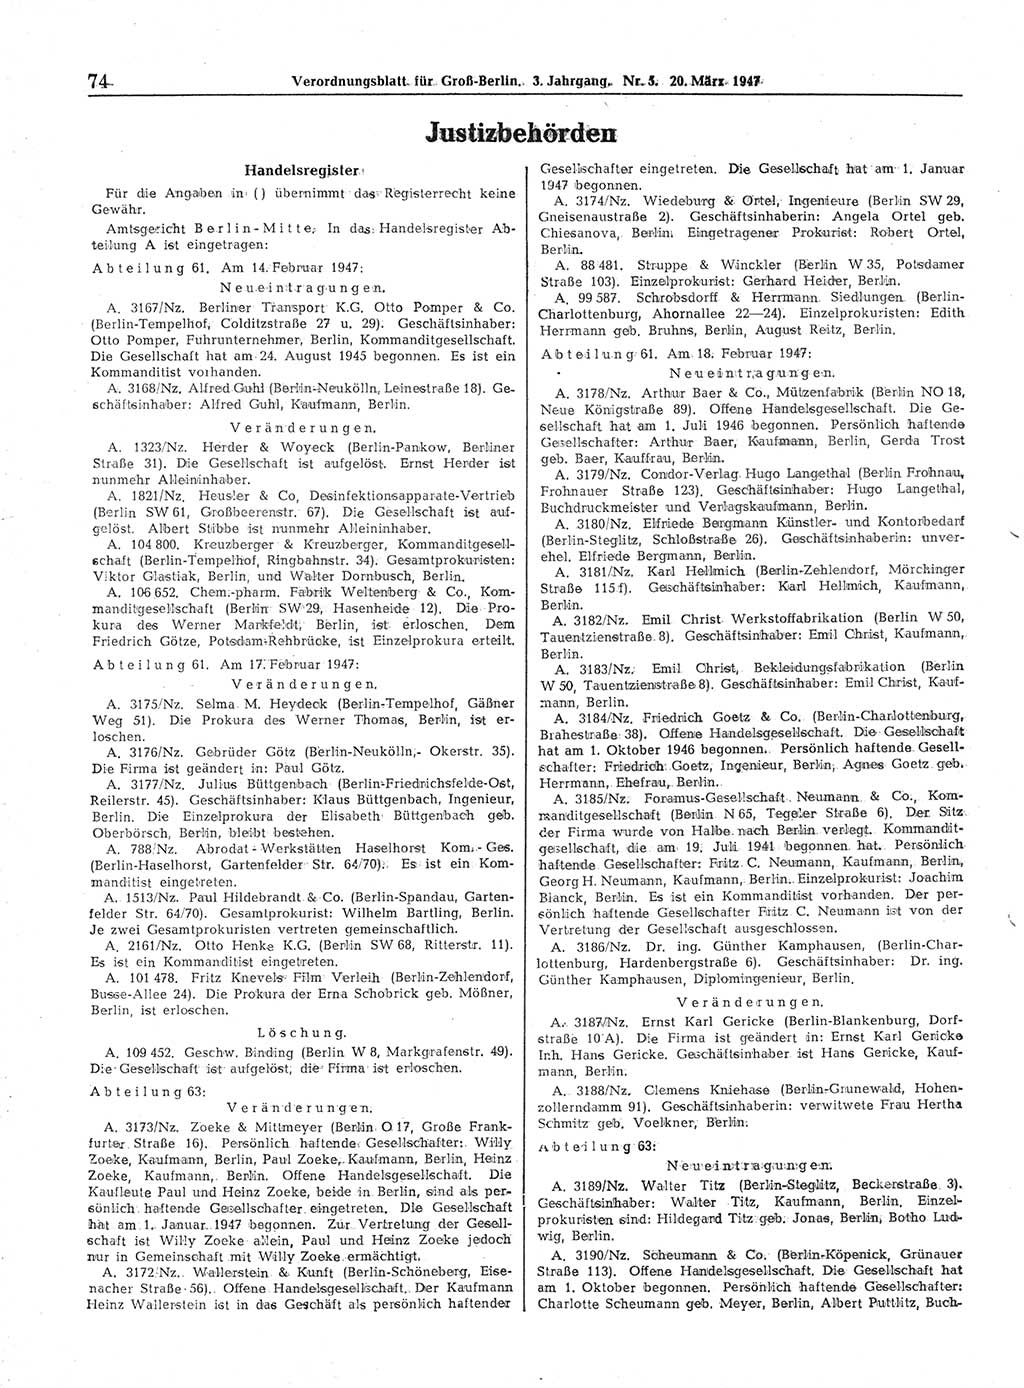 Verordnungsblatt (VOBl.) für Groß-Berlin 1947, Seite 74 (VOBl. Bln. 1947, S. 74)